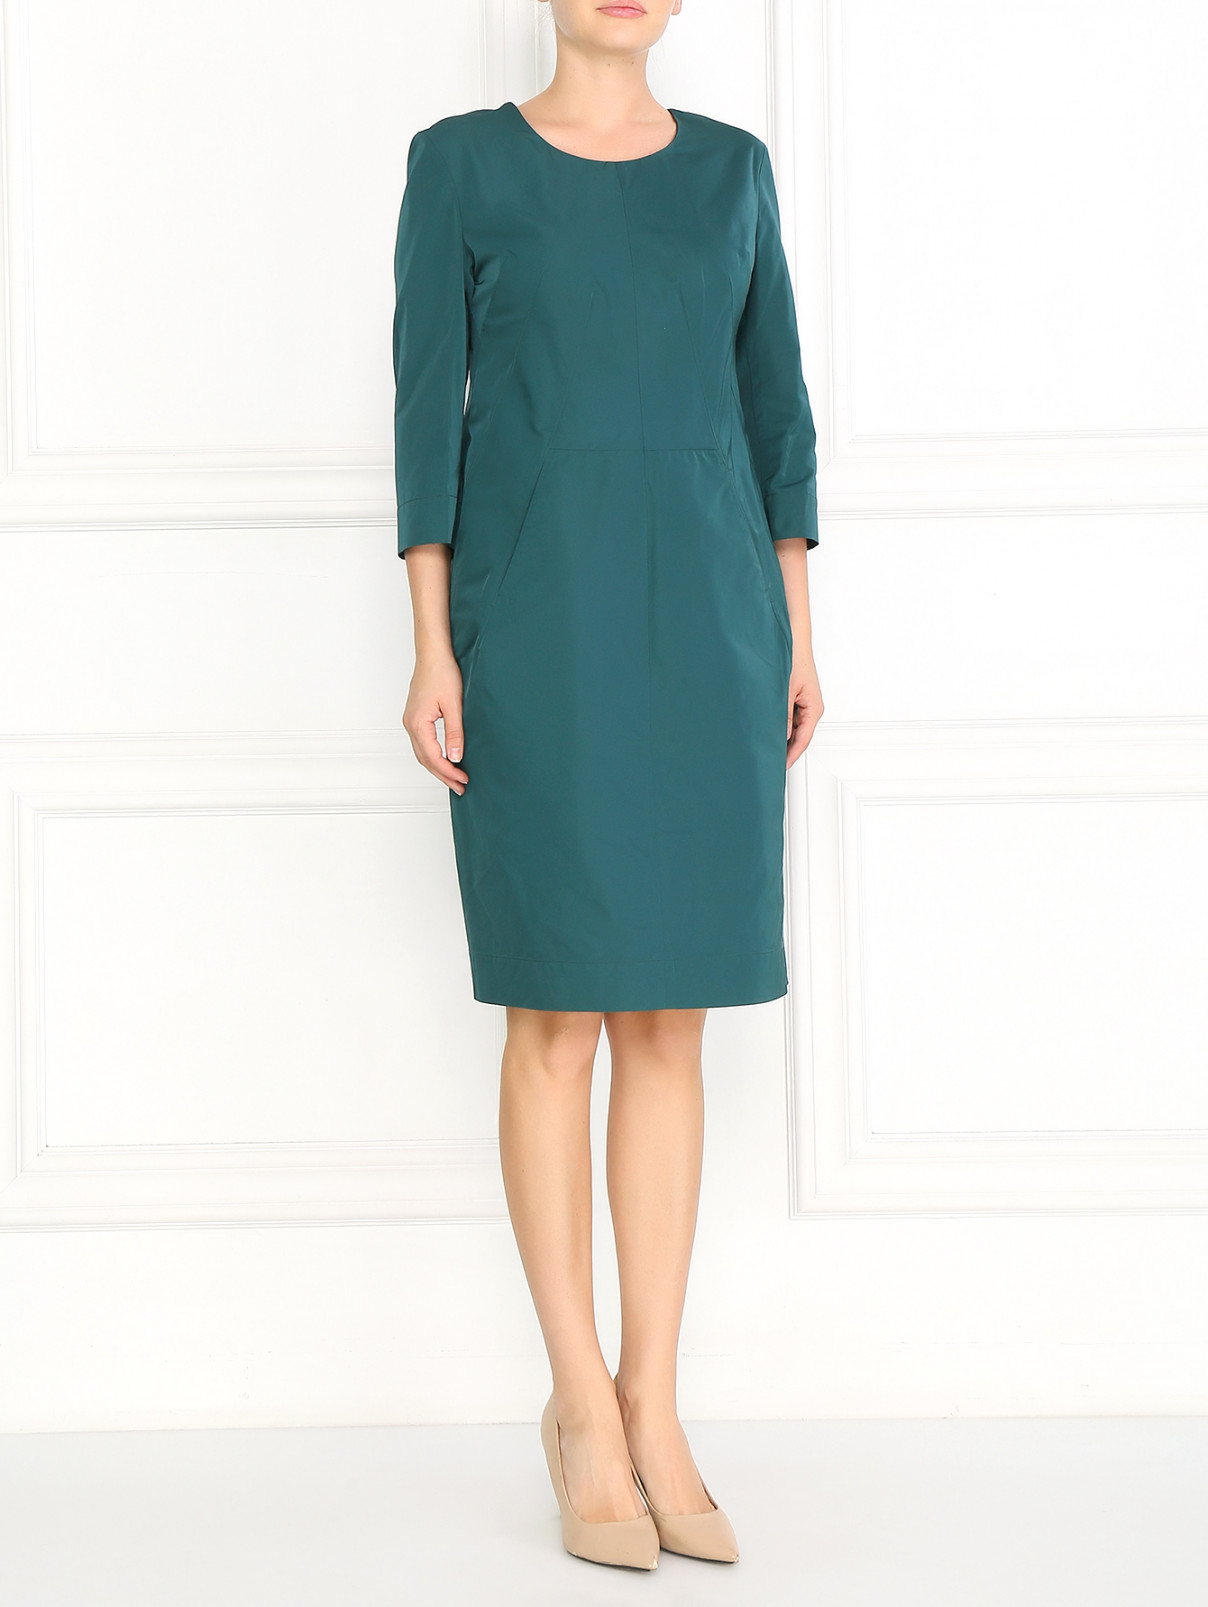 Платье свободного фасона Jil Sander  –  Модель Общий вид  – Цвет:  Зеленый